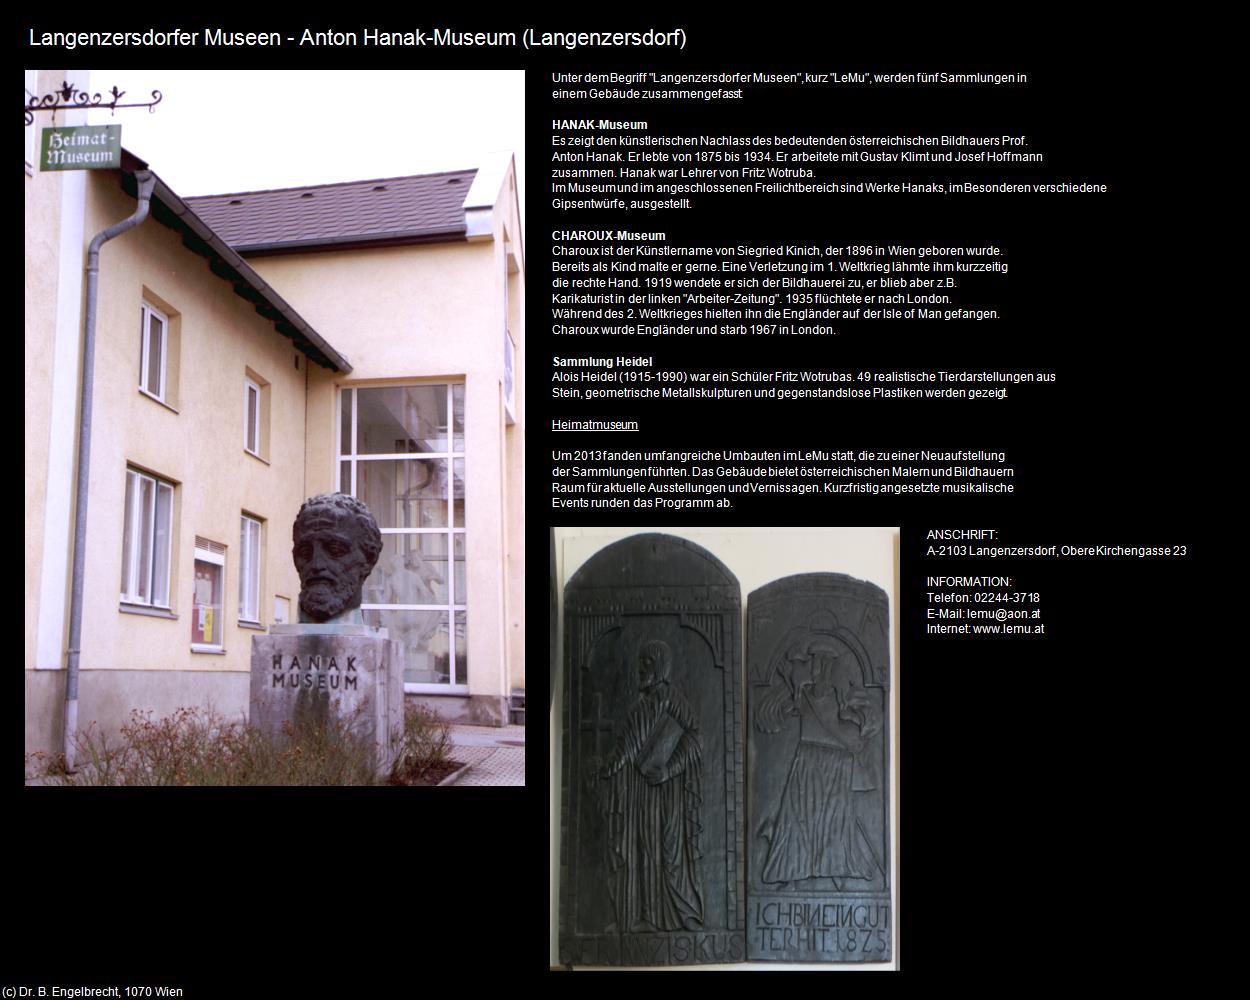 Anton Hanak-Museum (Langenzersdorf) in Kulturatlas-NIEDERÖSTERREICH(c)B.Engelbrecht